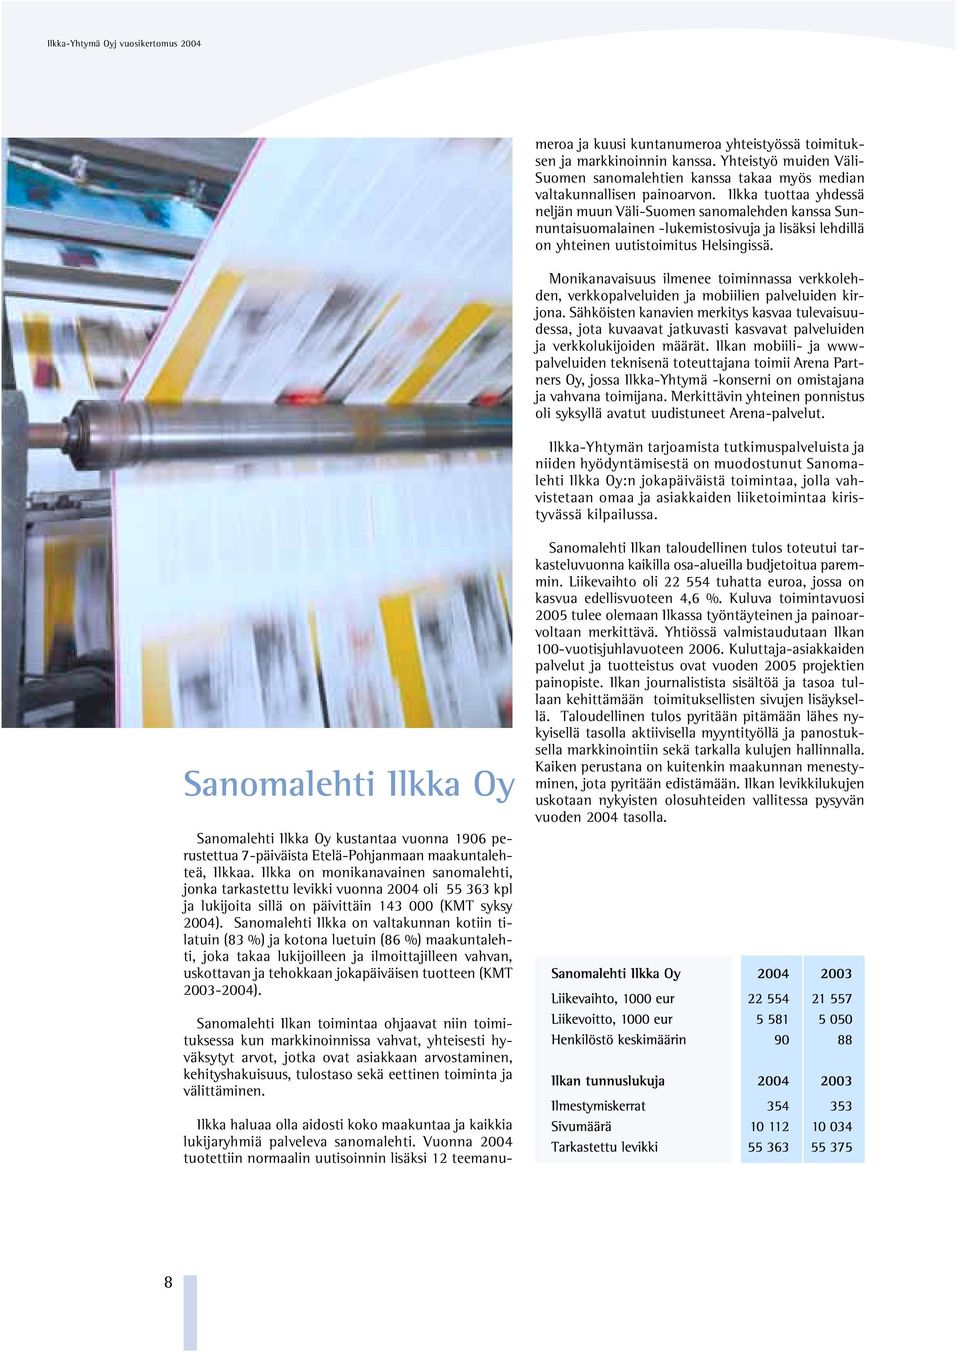 Yhteistyö muiden Väli- Suomen sanomalehtien kanssa takaa myös median valtakunnallisen painoarvon.